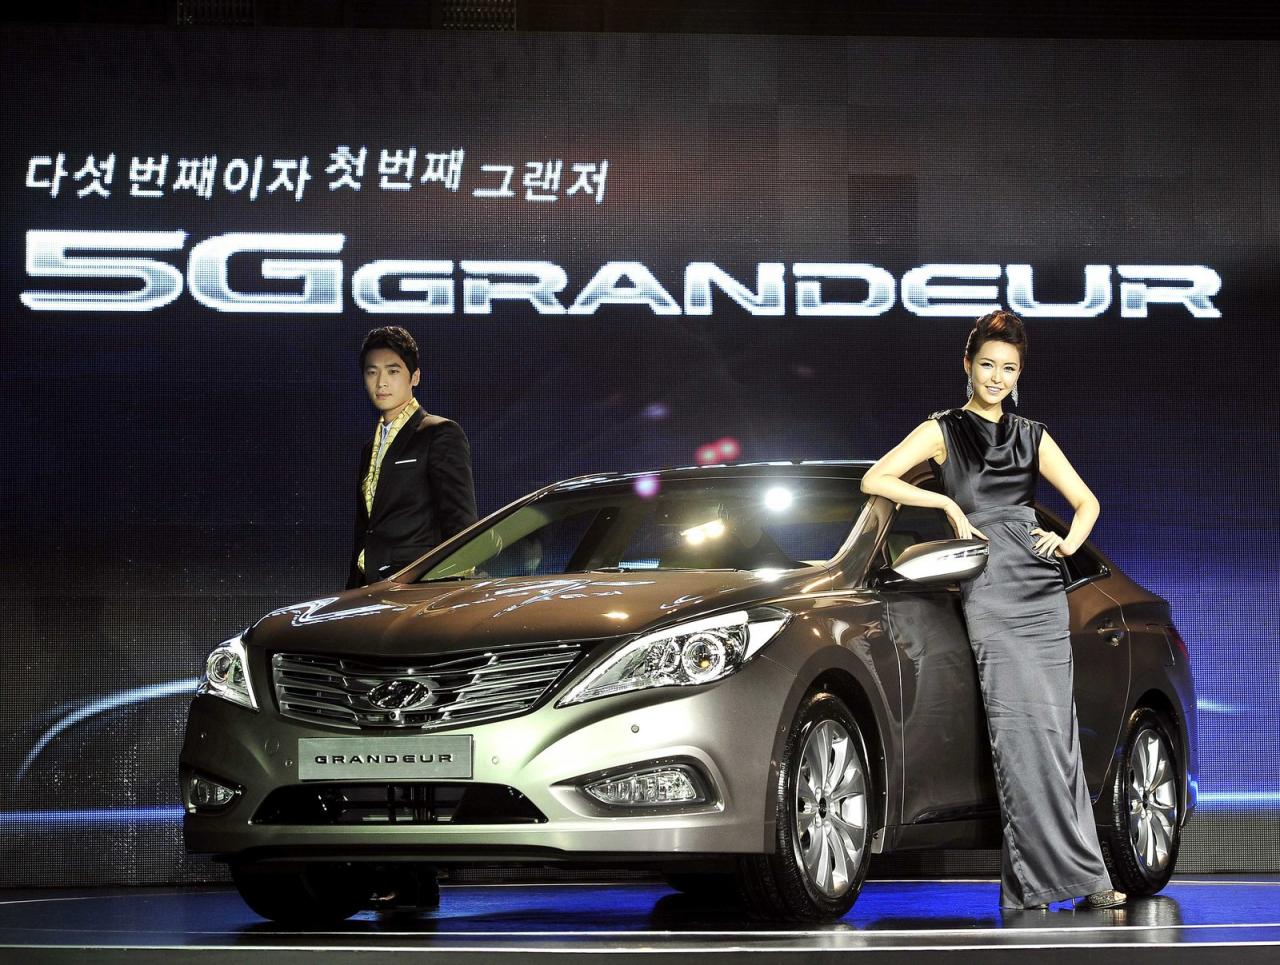 2012 Hyundai Grandeur